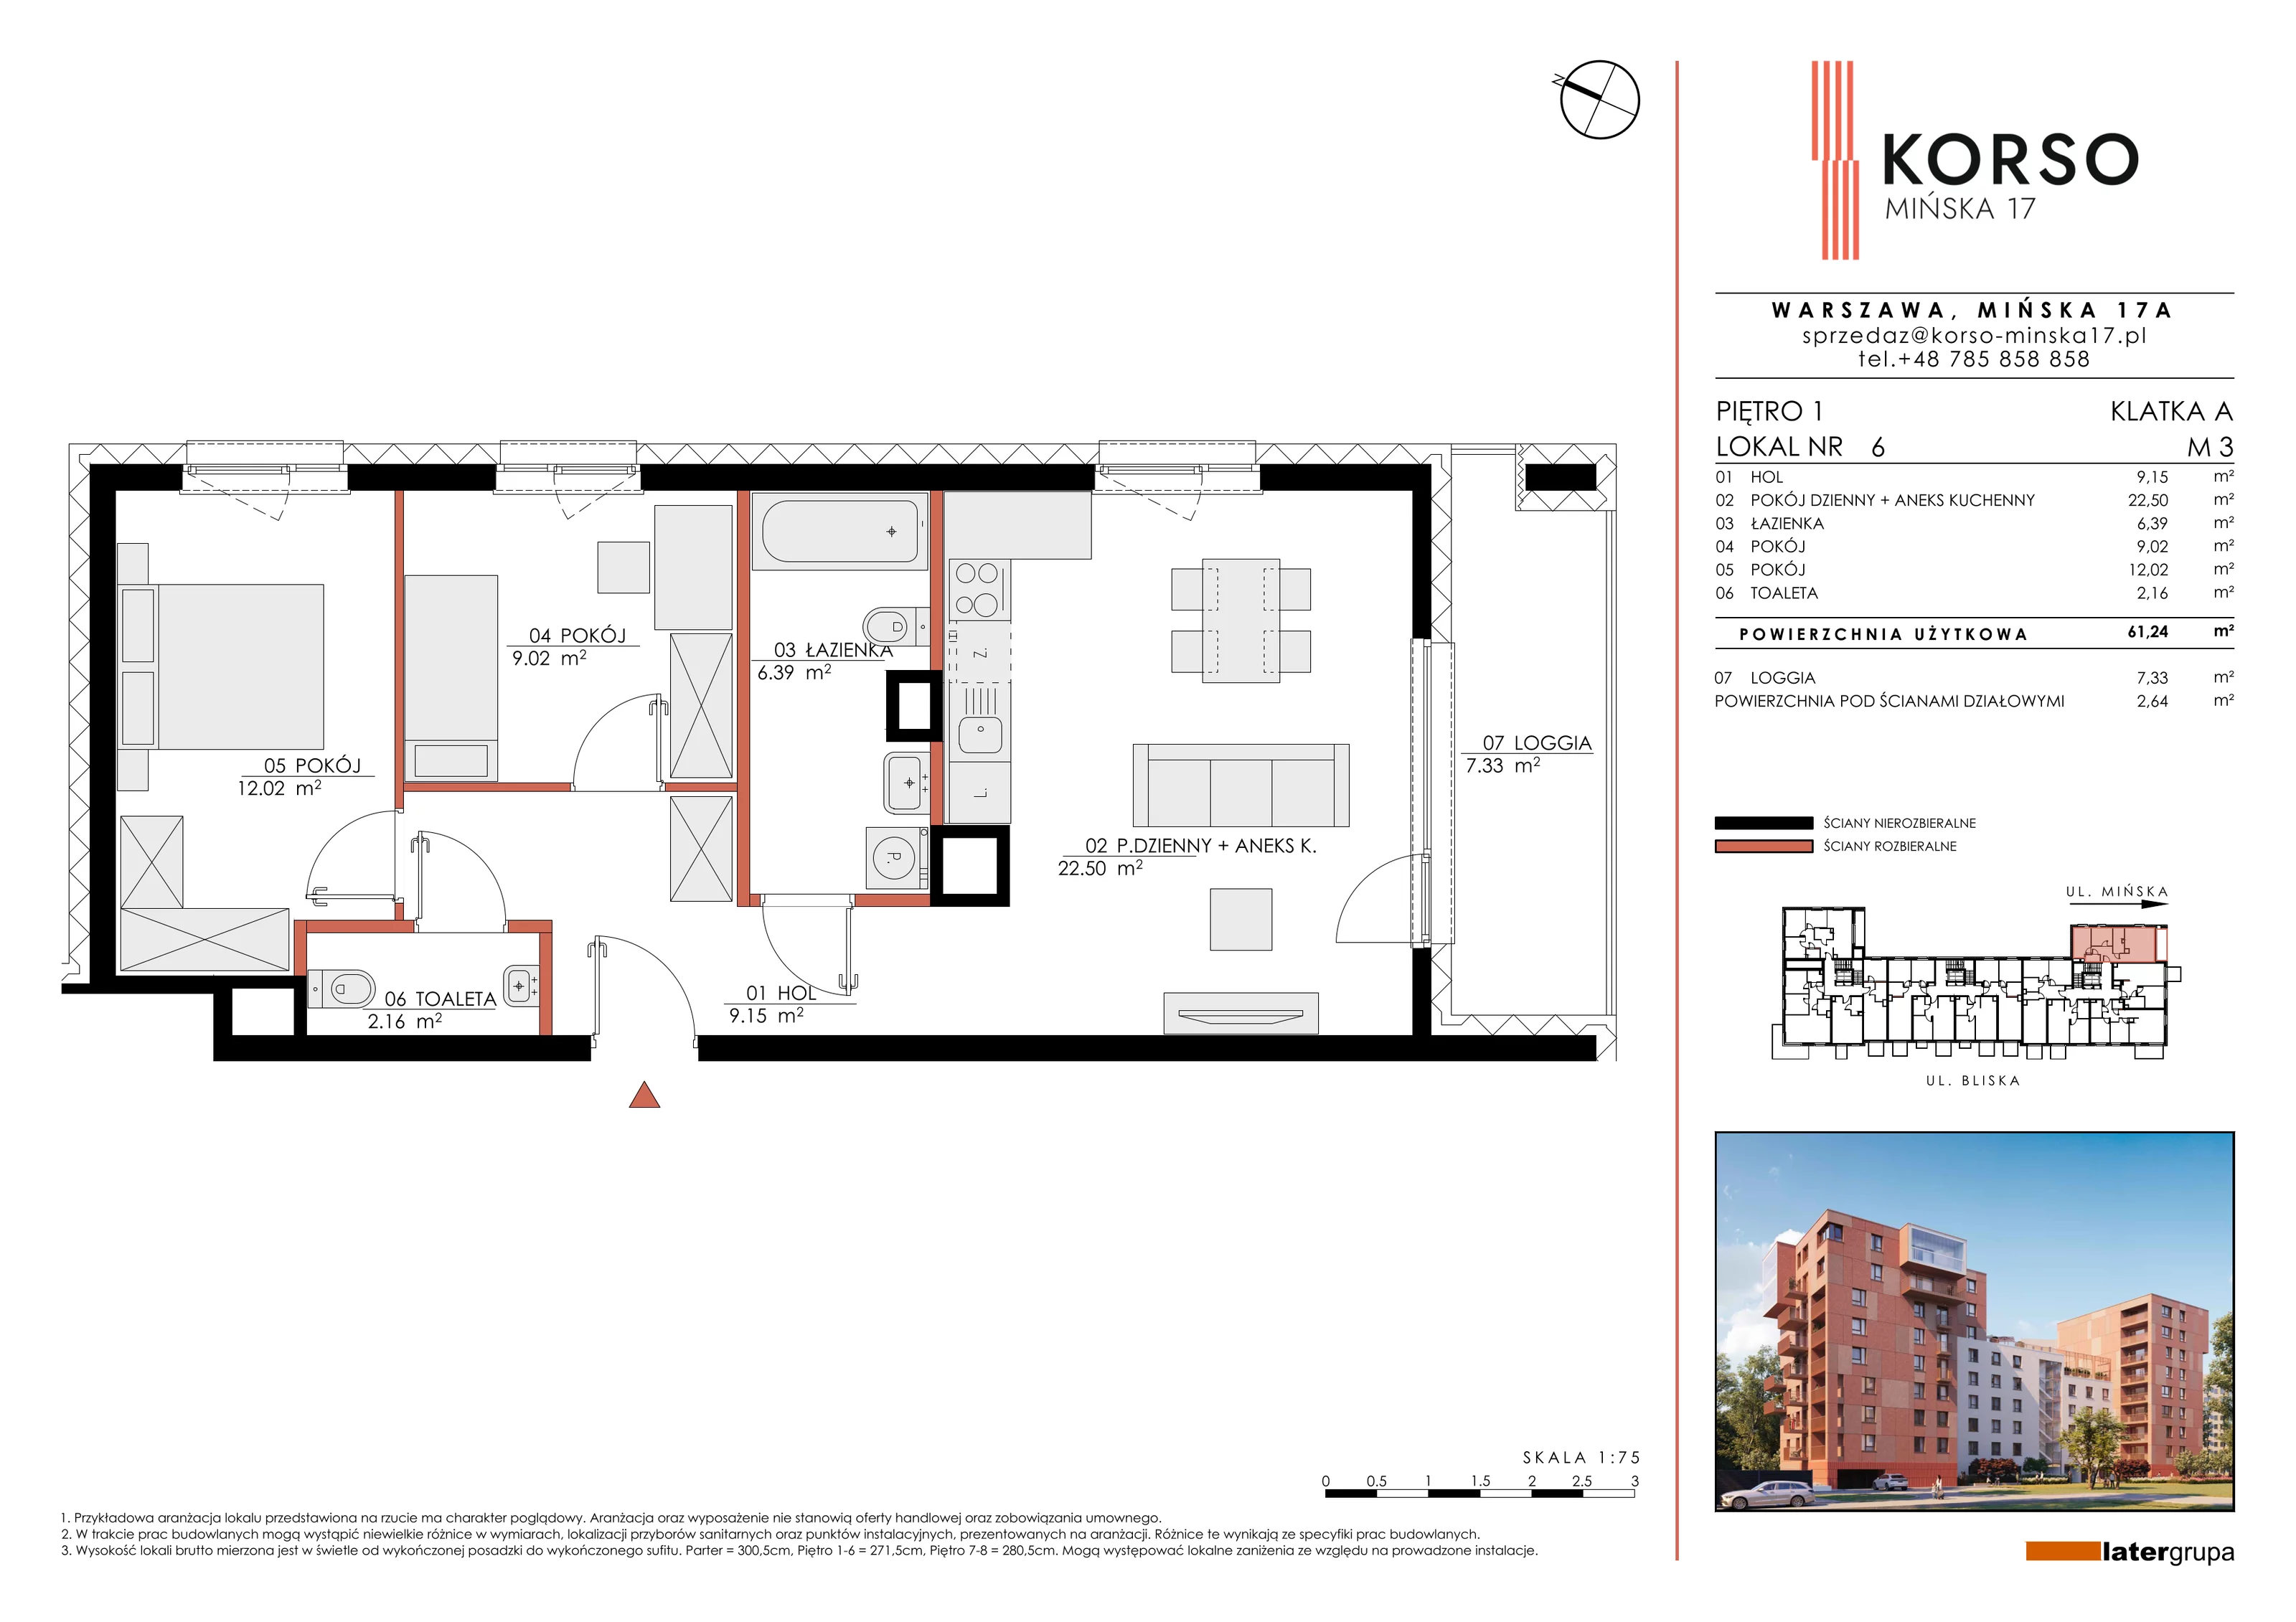 Mieszkanie 61,24 m², piętro 1, oferta nr 6, KORSO Mińska 17, Warszawa, Praga Południe, Kamionek, ul. Mińska 17